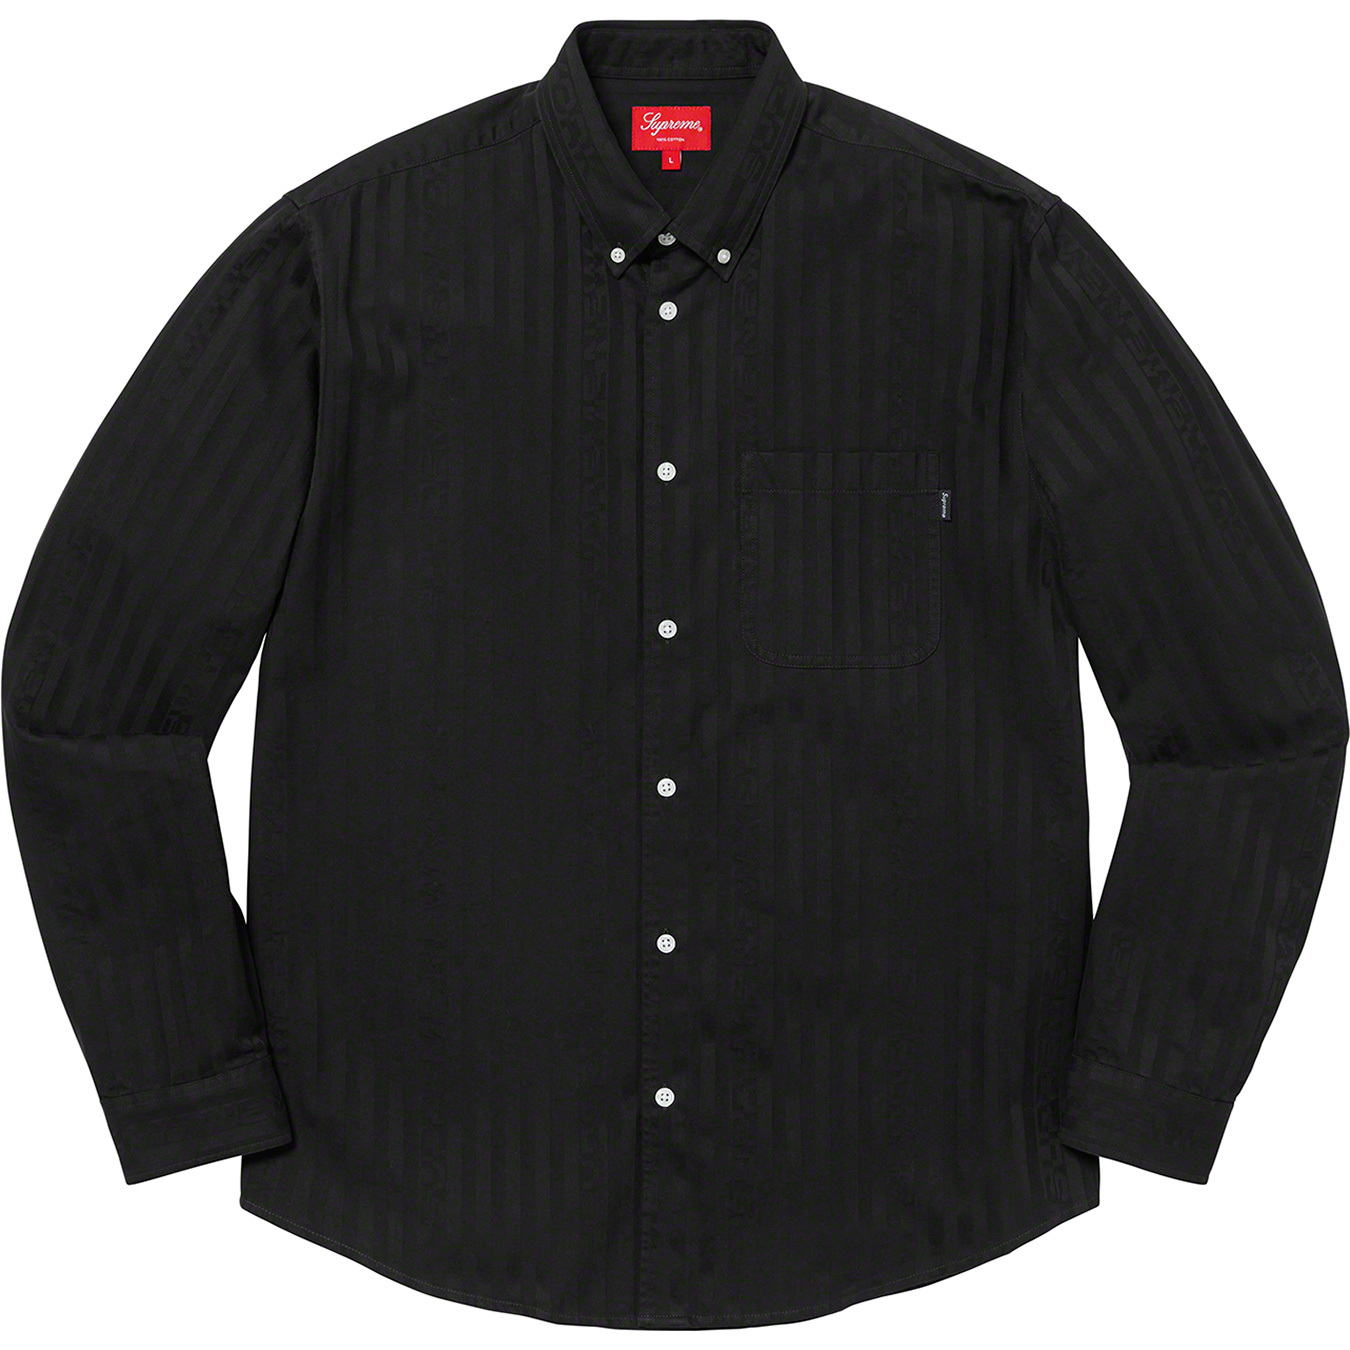 8,330円Supreme Jacquard Stripe Twill Shirt